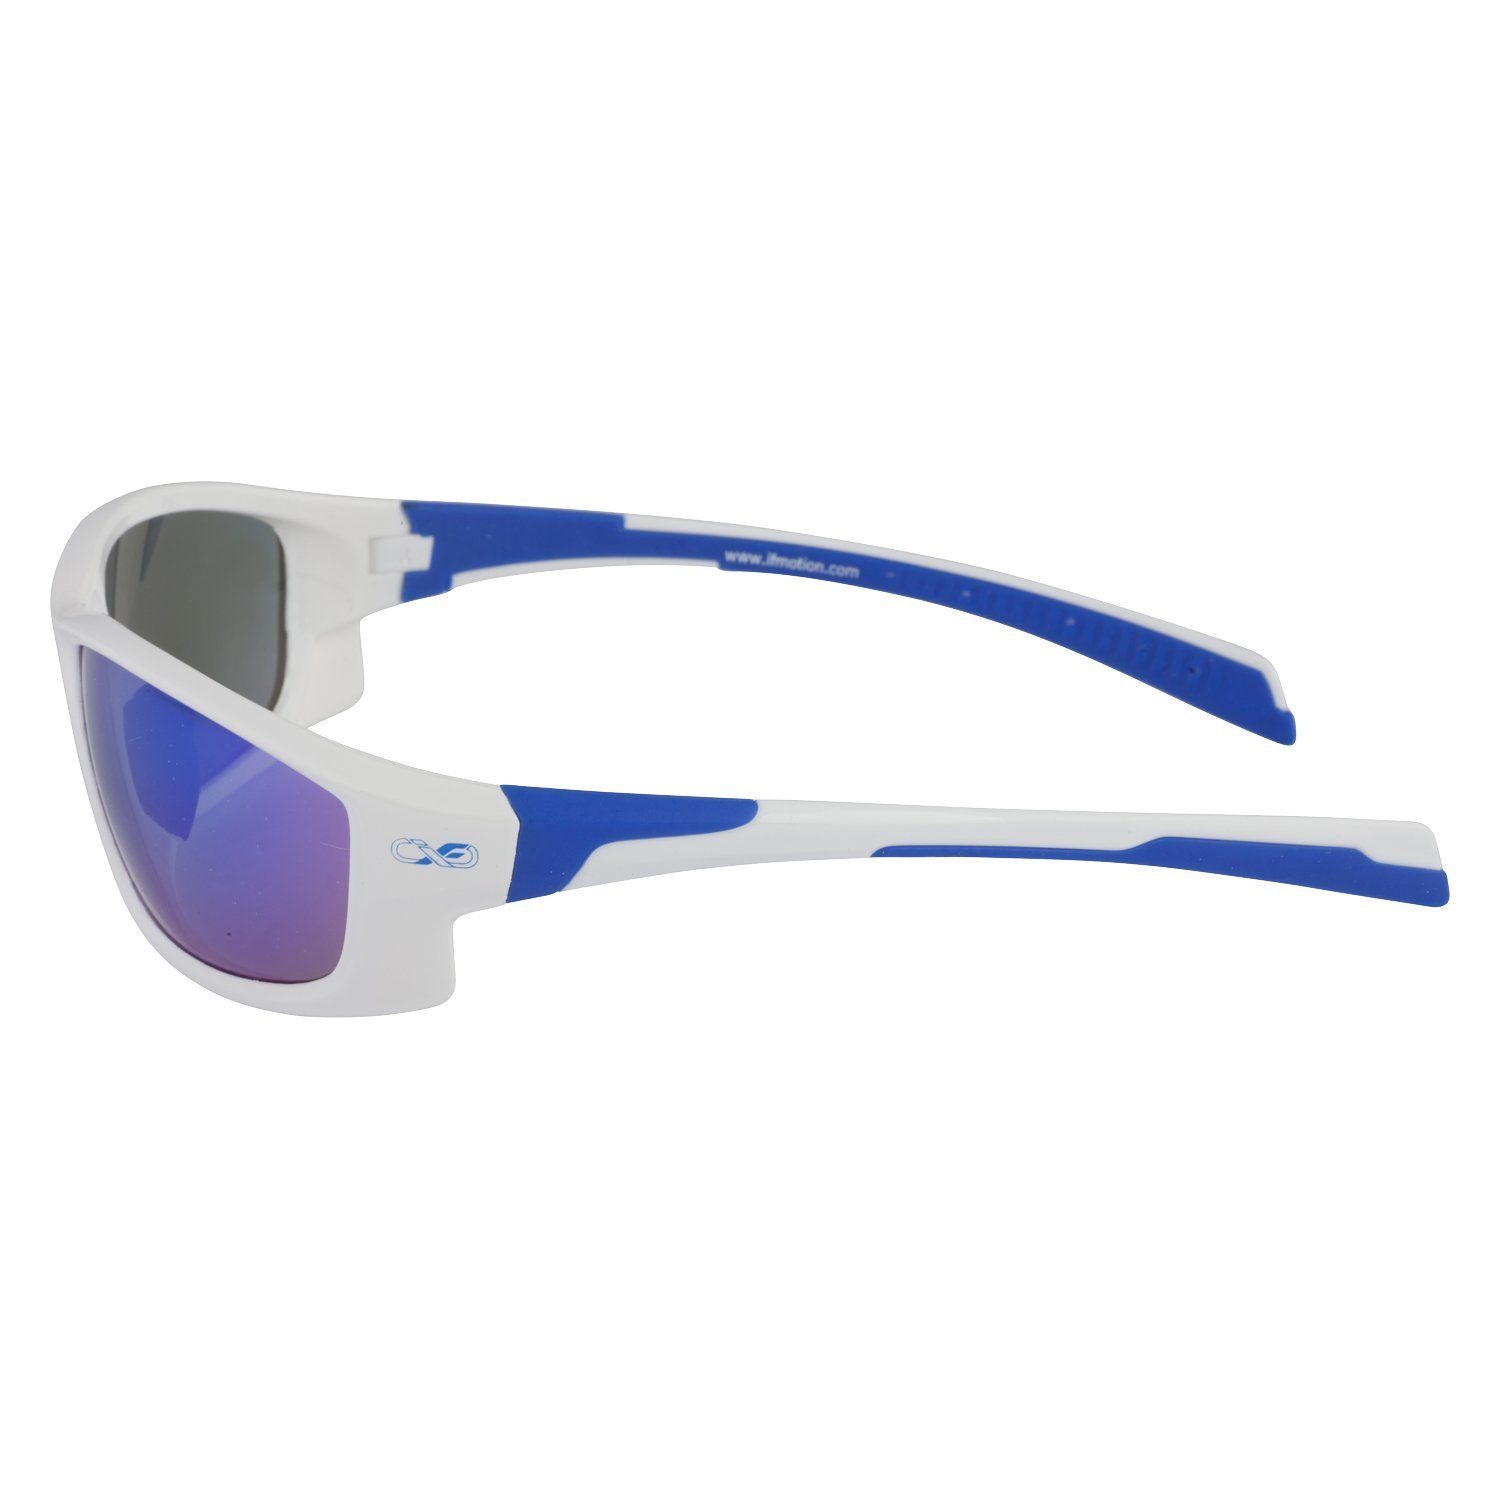 Viwanda Sonnenbrille Infinite in 3 Farben Aufbewahrungsbeutel Reinigungstuch) (Mit Sportbrille / Eins